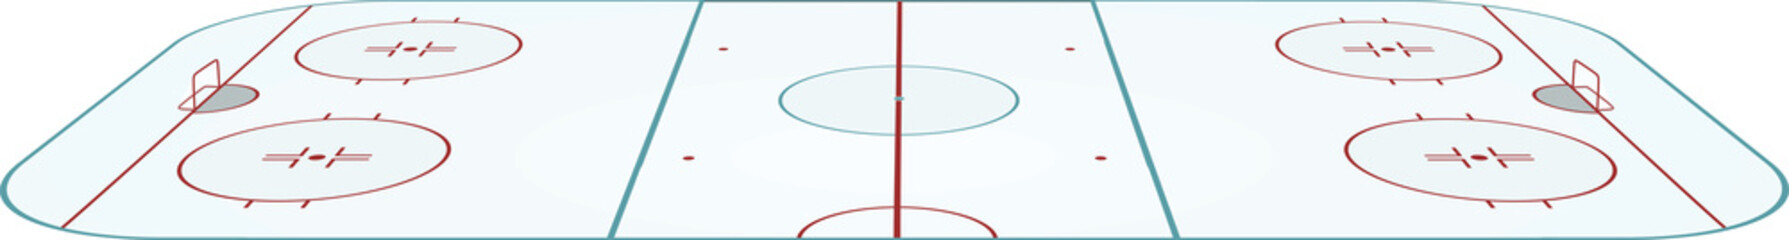 Hockey field. vector illustration